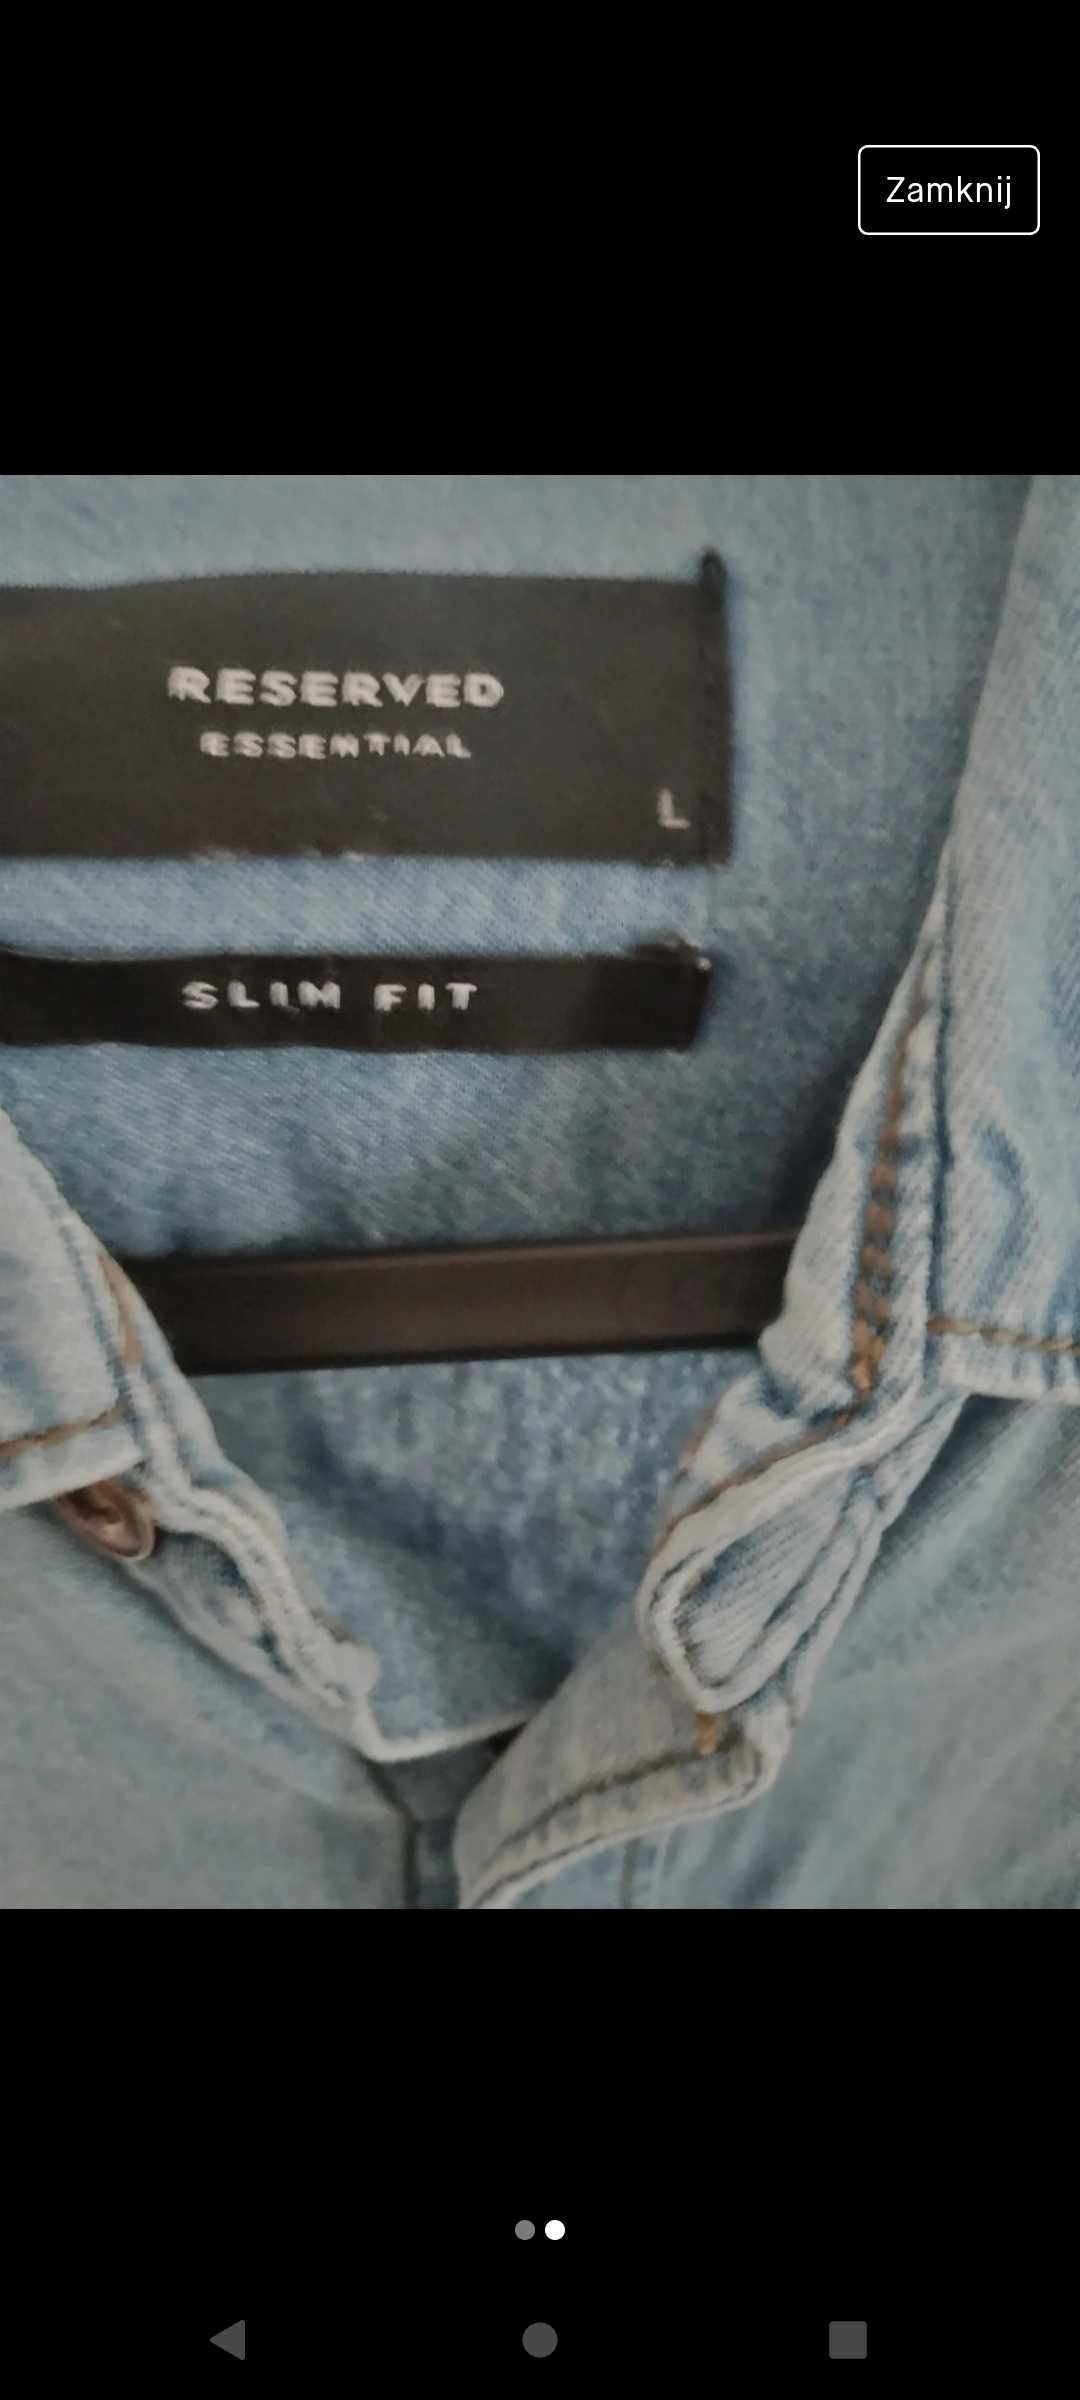 Super jeansowa koszula męska slim fit L